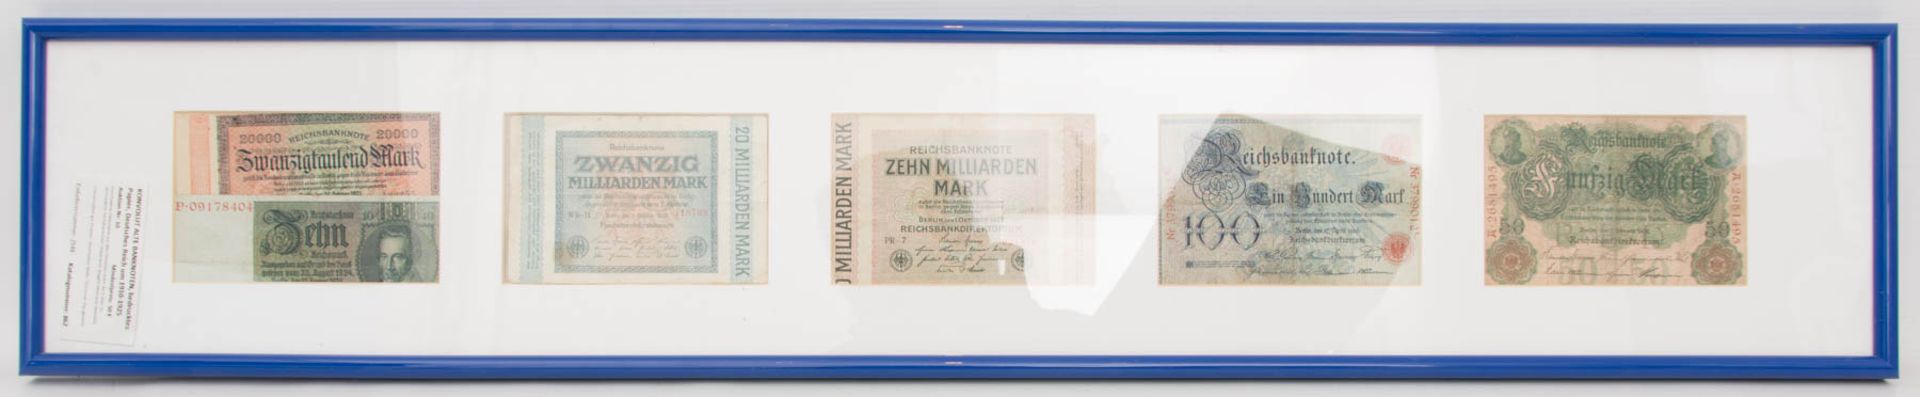 KONVOLUT ALTE BANKNOTEN, bedrucktes Papier, Deutsches Reich um 1910-1925Verschiedene Geldscheine aus